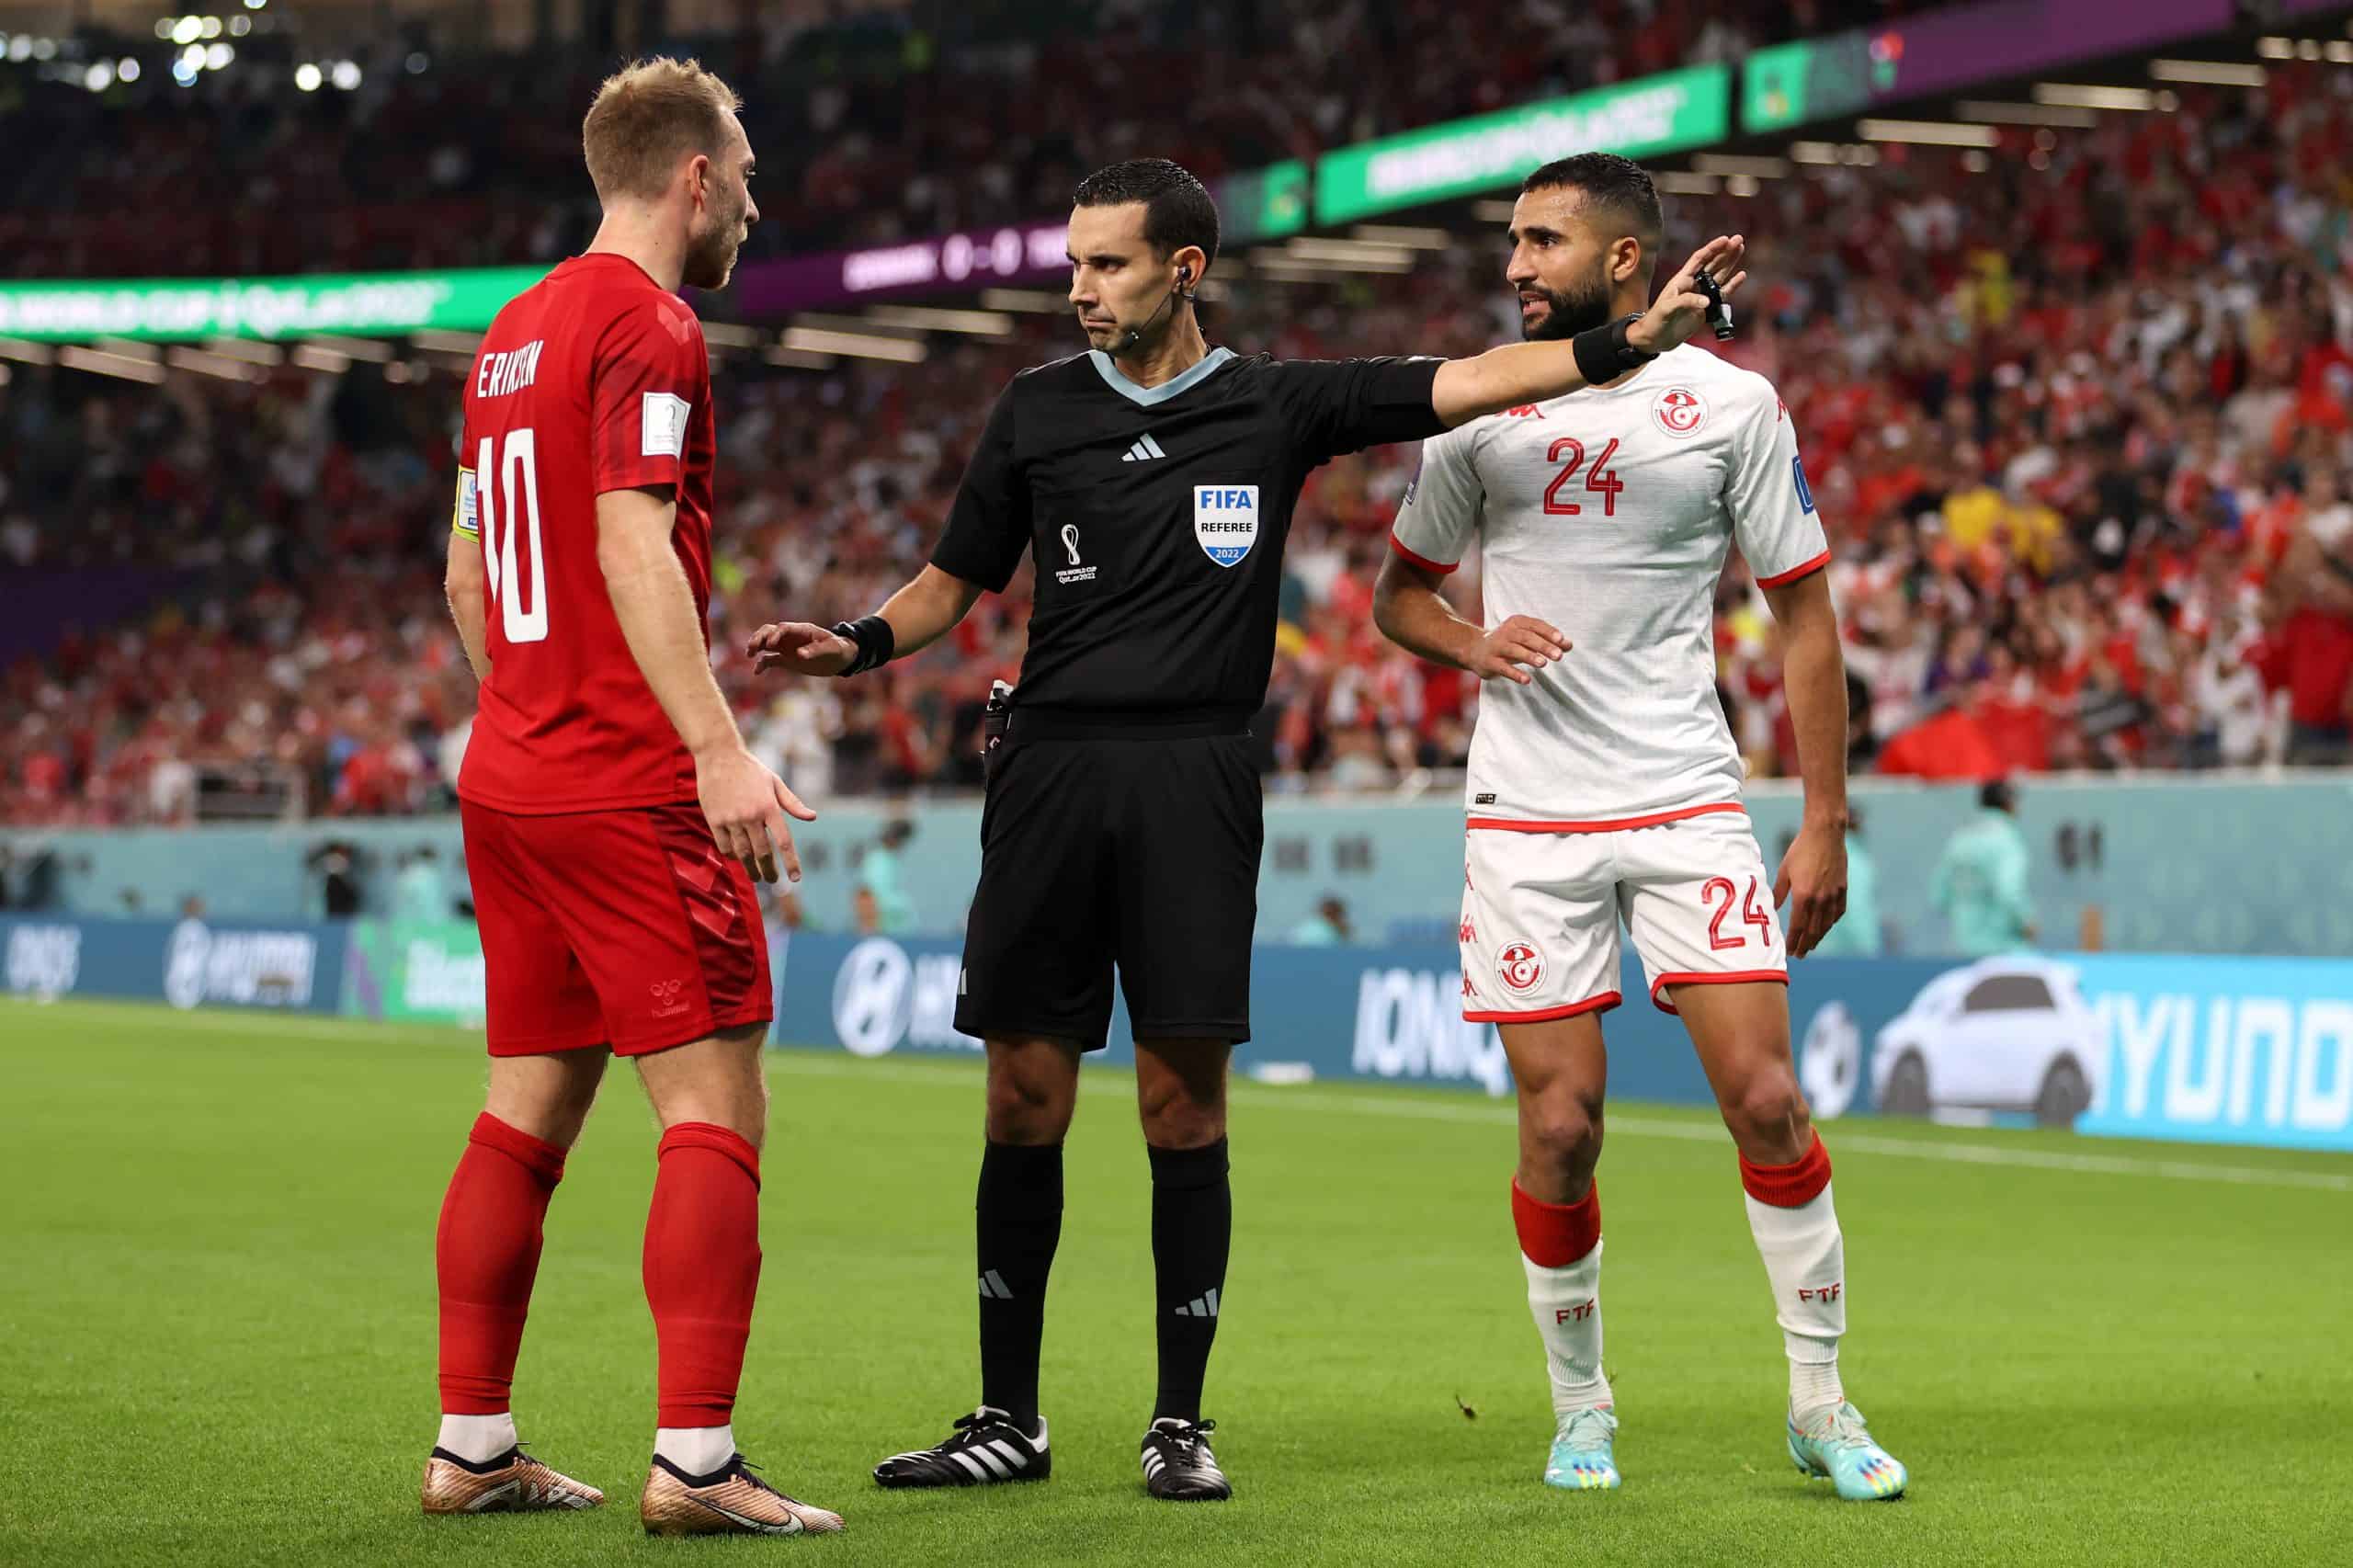 César Ramos pita el primer juego sin goles del Mundial, ignora 2 penales en el Dinamarca-Túnez